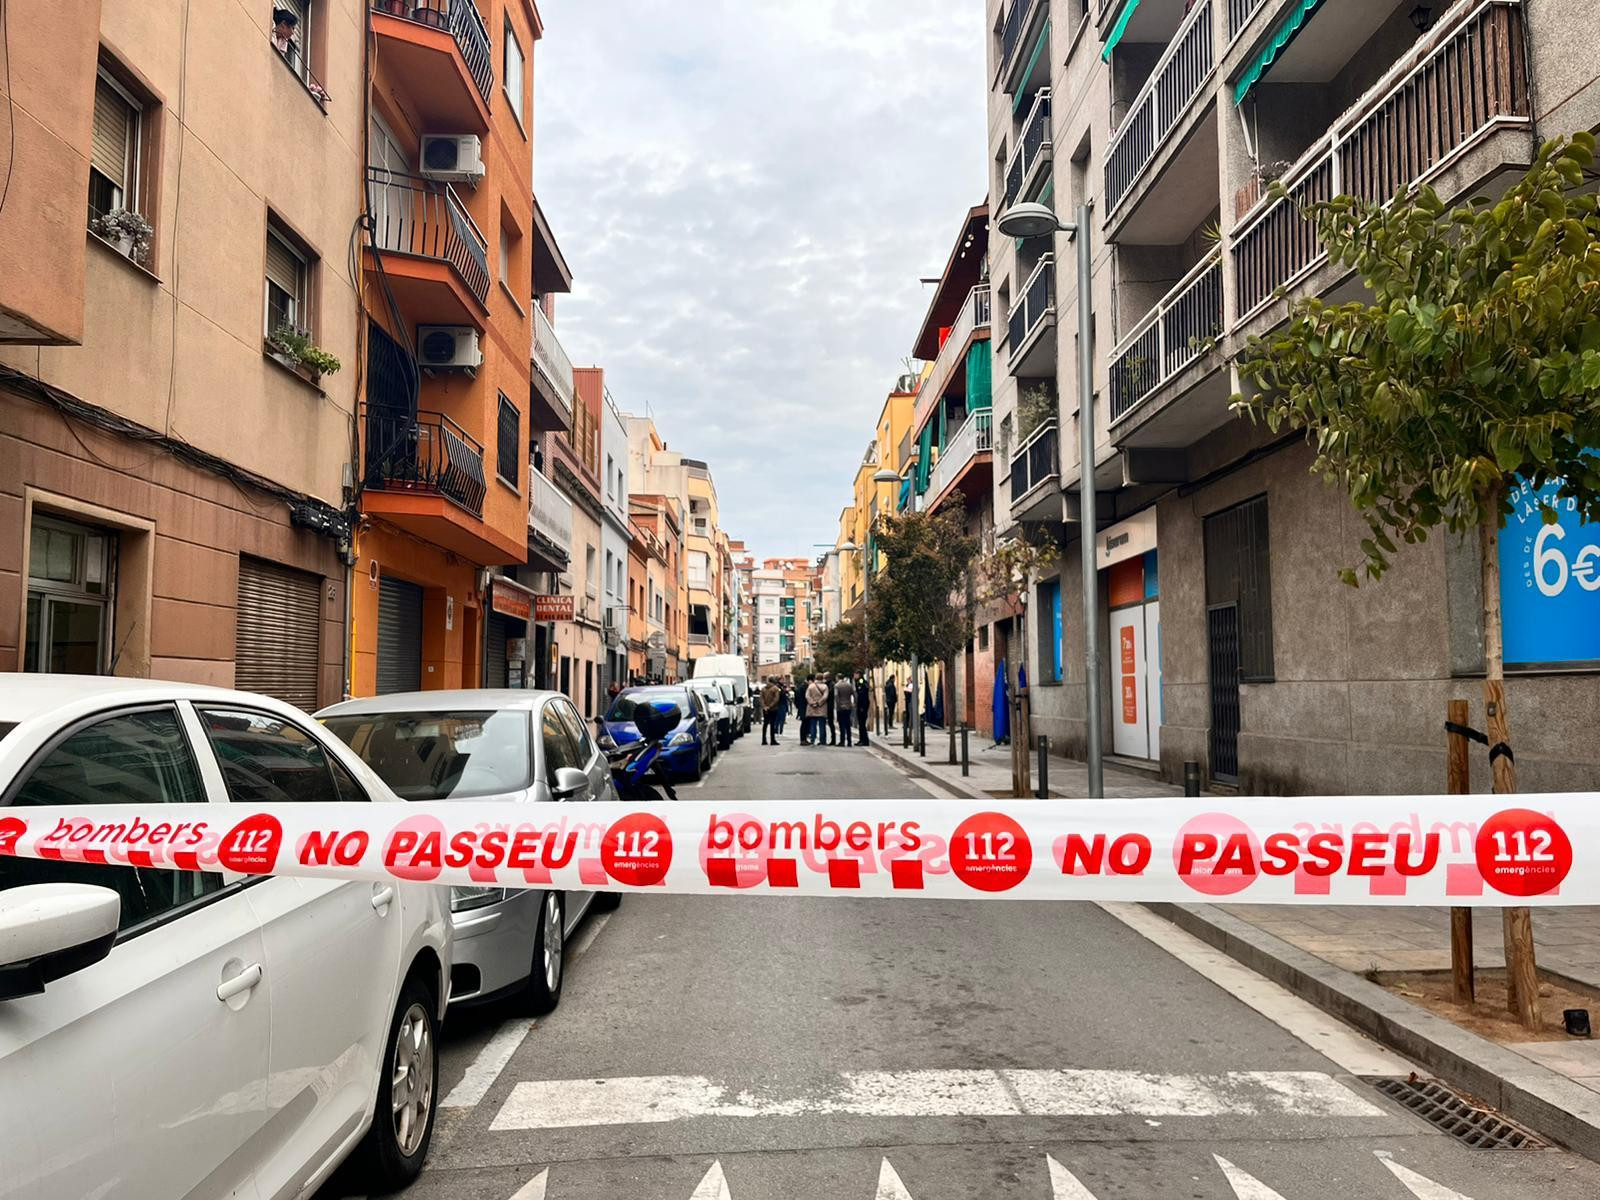 Una cinta de bomberos prohíbe el paso en la calle de Sant Joaquim de Santa Coloma, el lugar del incendio mortal / METRÓPOLI - ÁNGELA VÁZQUEZ